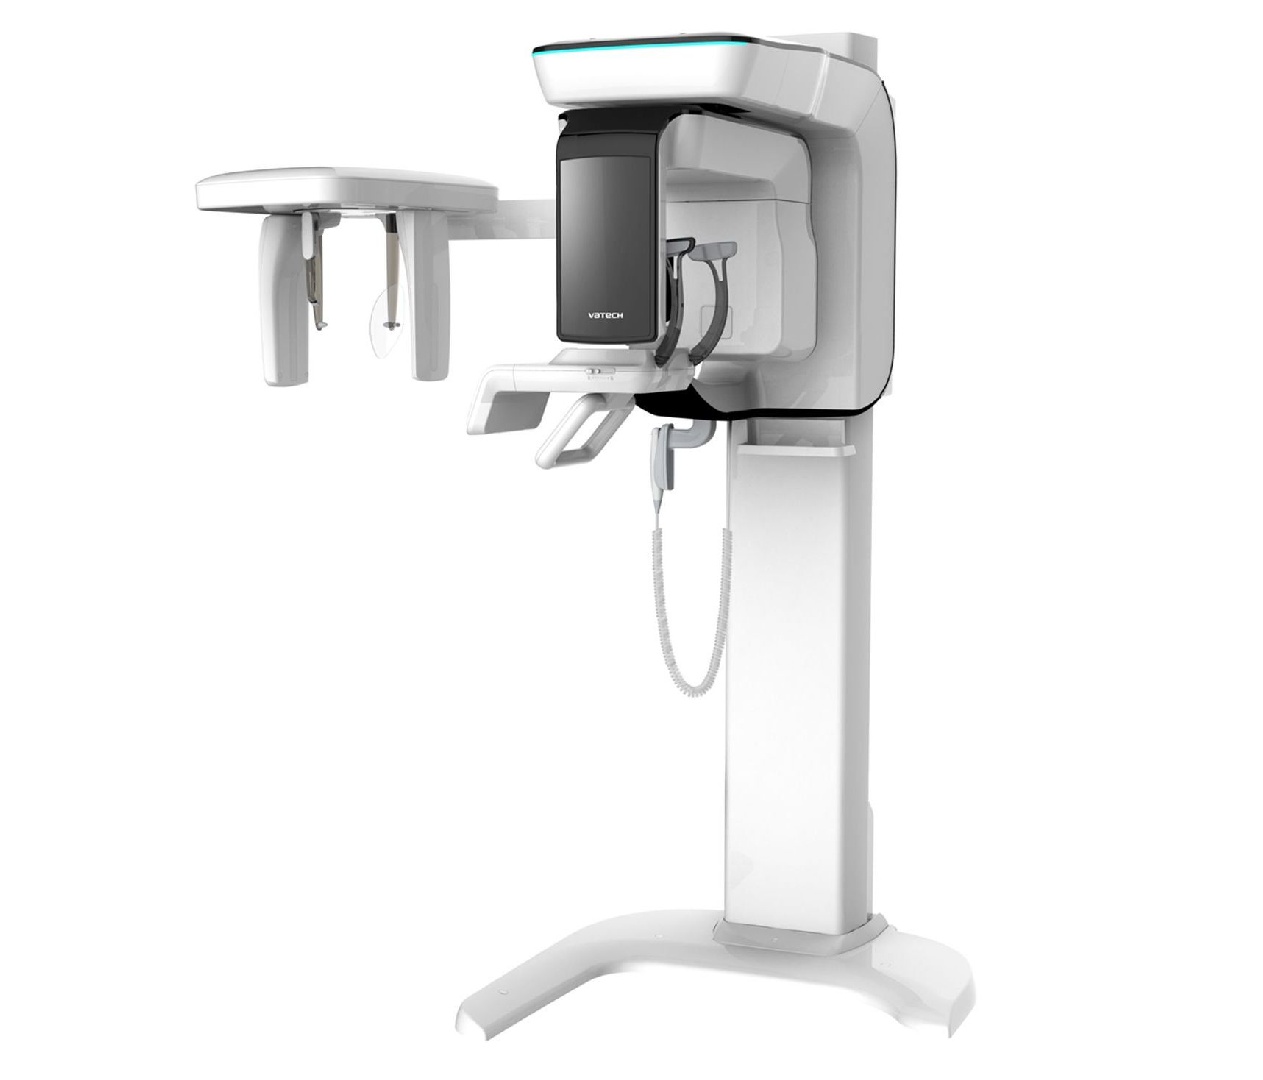 3D томограф Pax-i 3D SC панорамный, конусно-лучевой, FOV 12x9